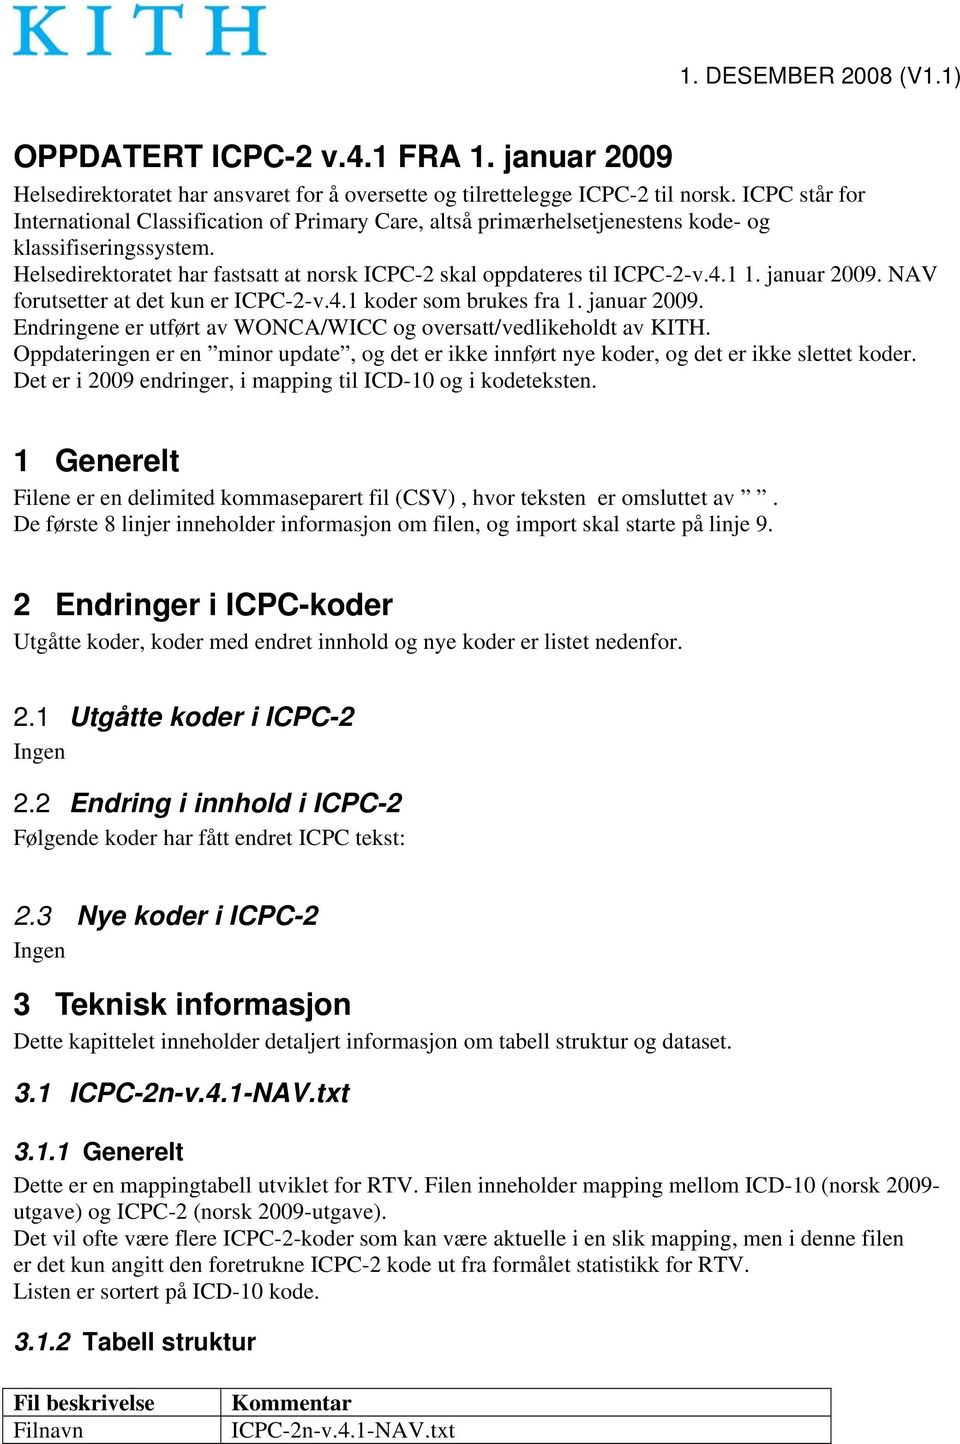 1 1. januar 2009. NAV forutsetter at det kun er ICPC-2-v.4.1 koder som brukes fra 1. januar 2009. Endringene er utført av WONCA/WICC og oversatt/vedlikeholdt av KITH.